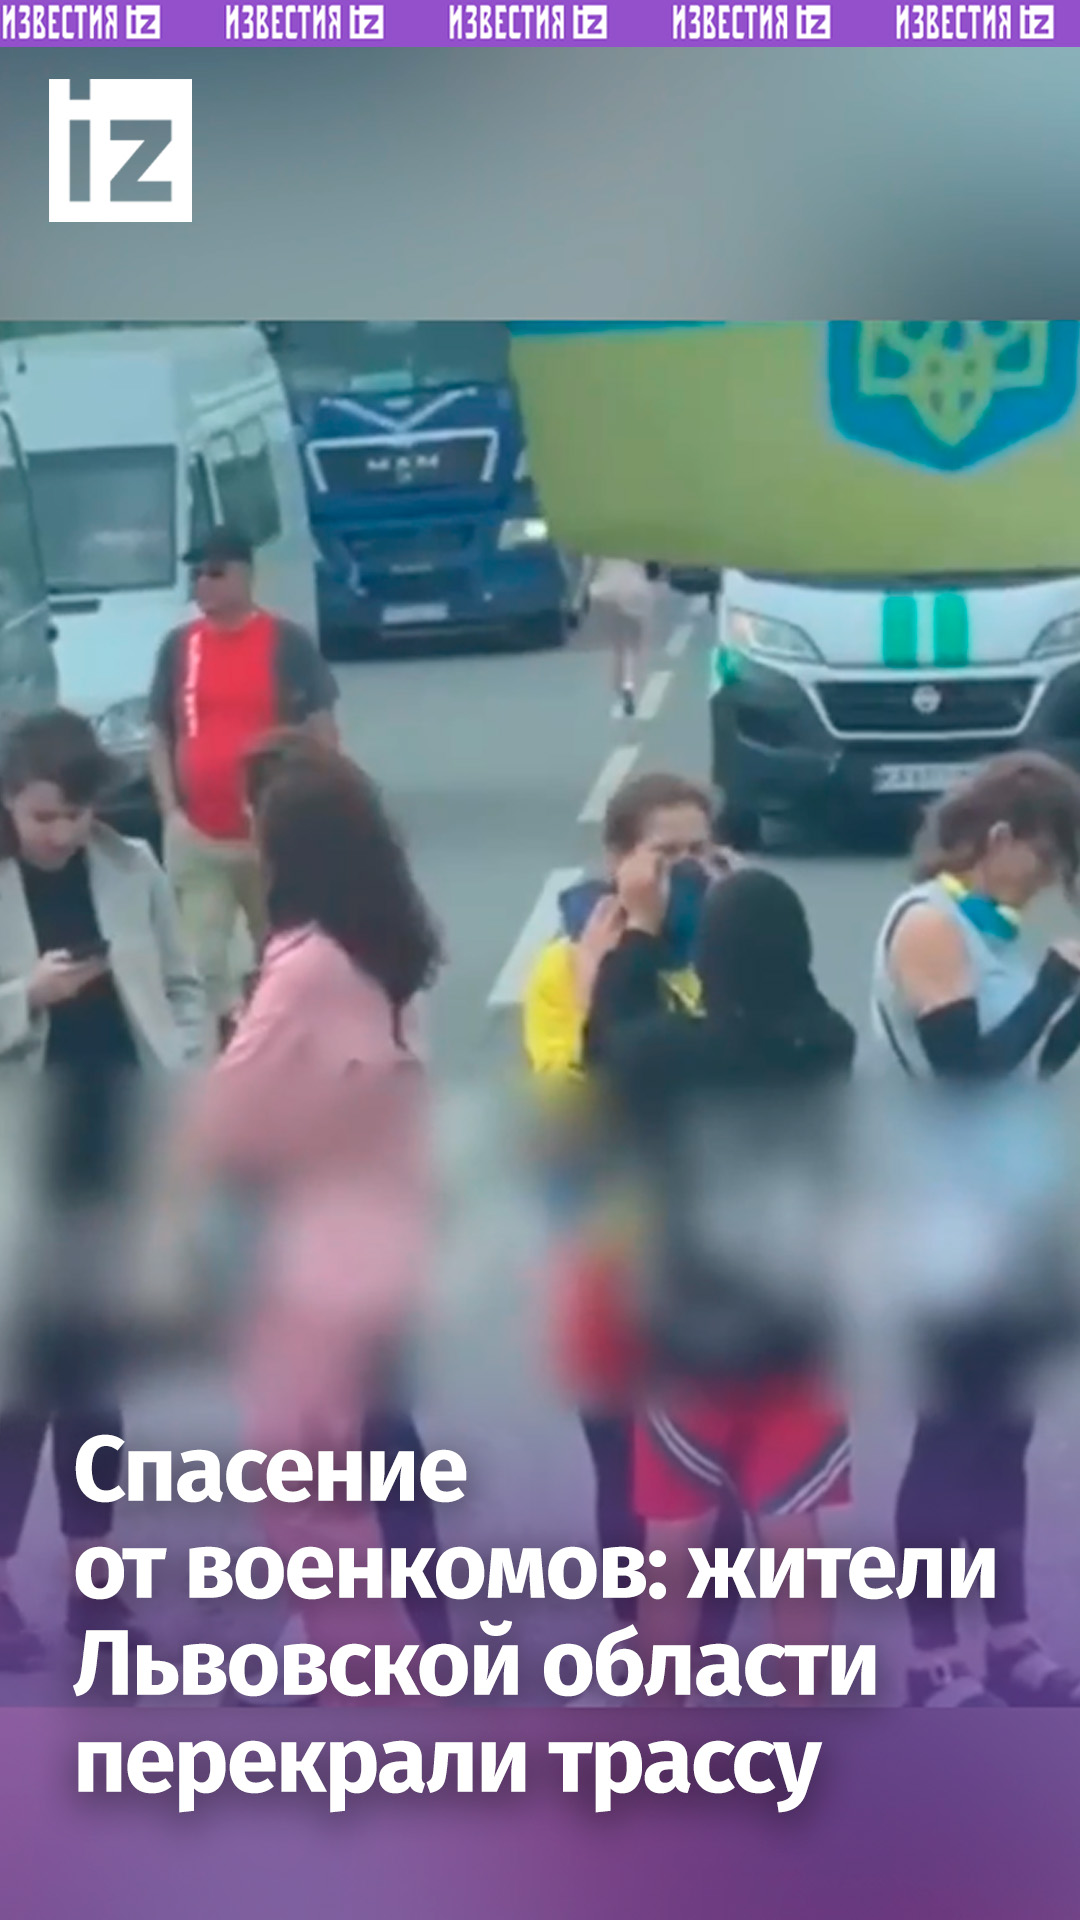 Жители Львовской области перекрыли дорогу, чтобы не дать военкомам забрать водителя автобуса